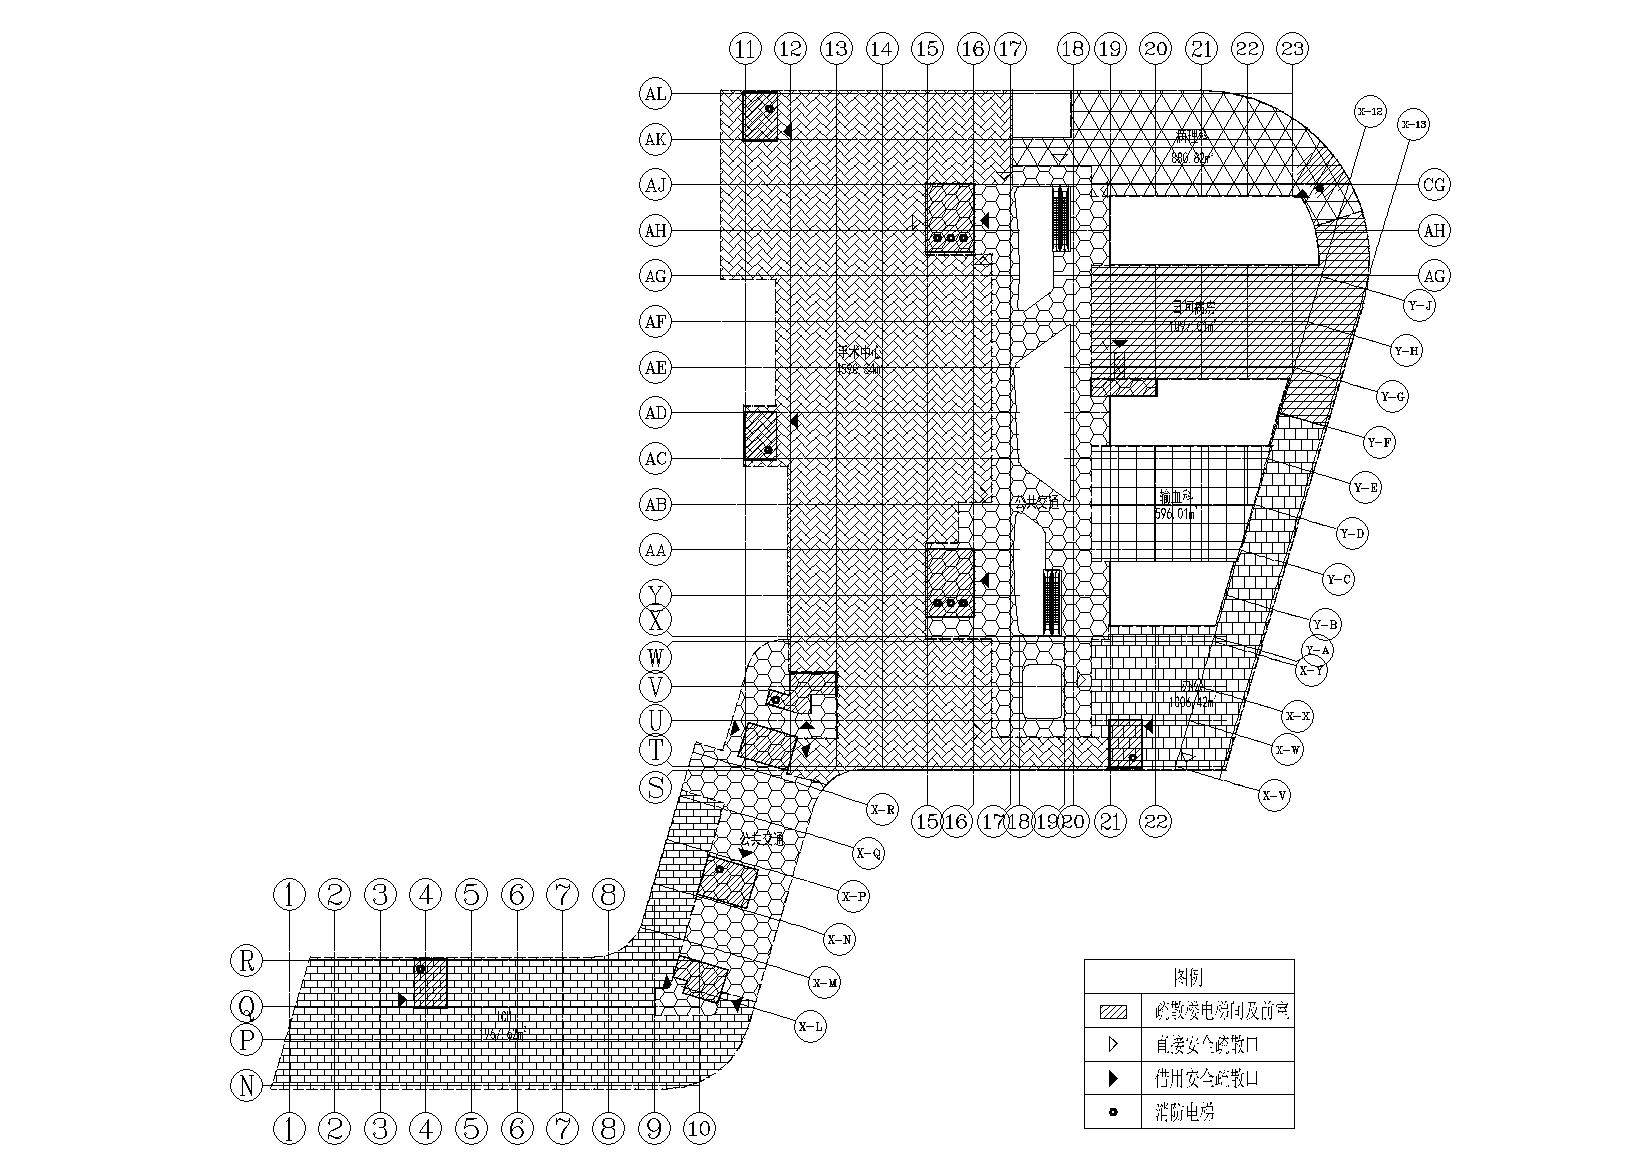 特大型企业医院门诊住院楼建筑施工图-4F科室范围及面积